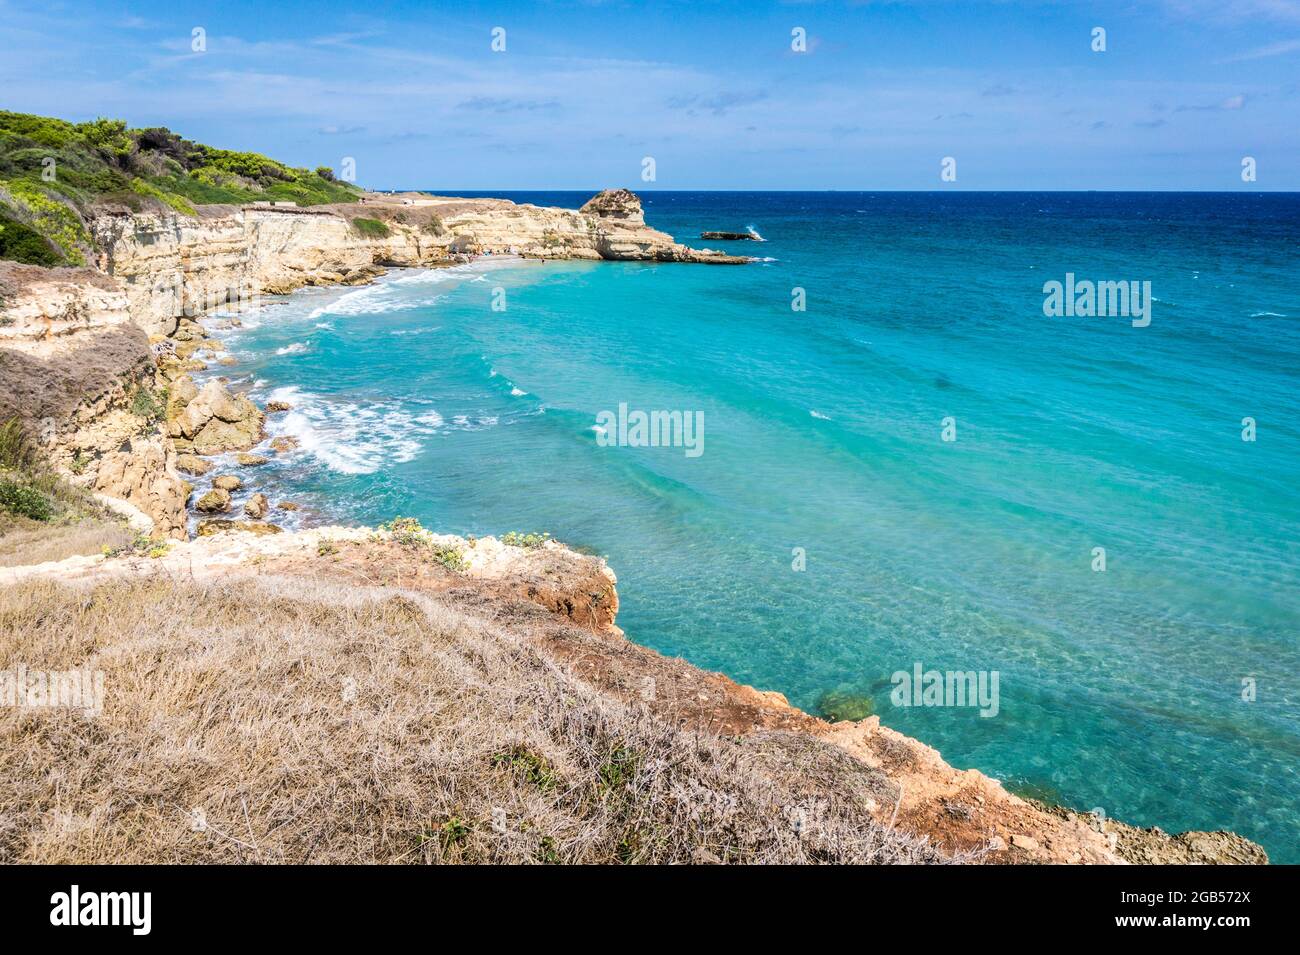 La plage de Punticedha ou Spiaggia Punticedha de Sant'Andrea, côte  Adriatique de Salento, Apulia, Italie. Belle côte de mer de sable de Puglia  avec eau bleue, falaises pendant une journée d'été, vue